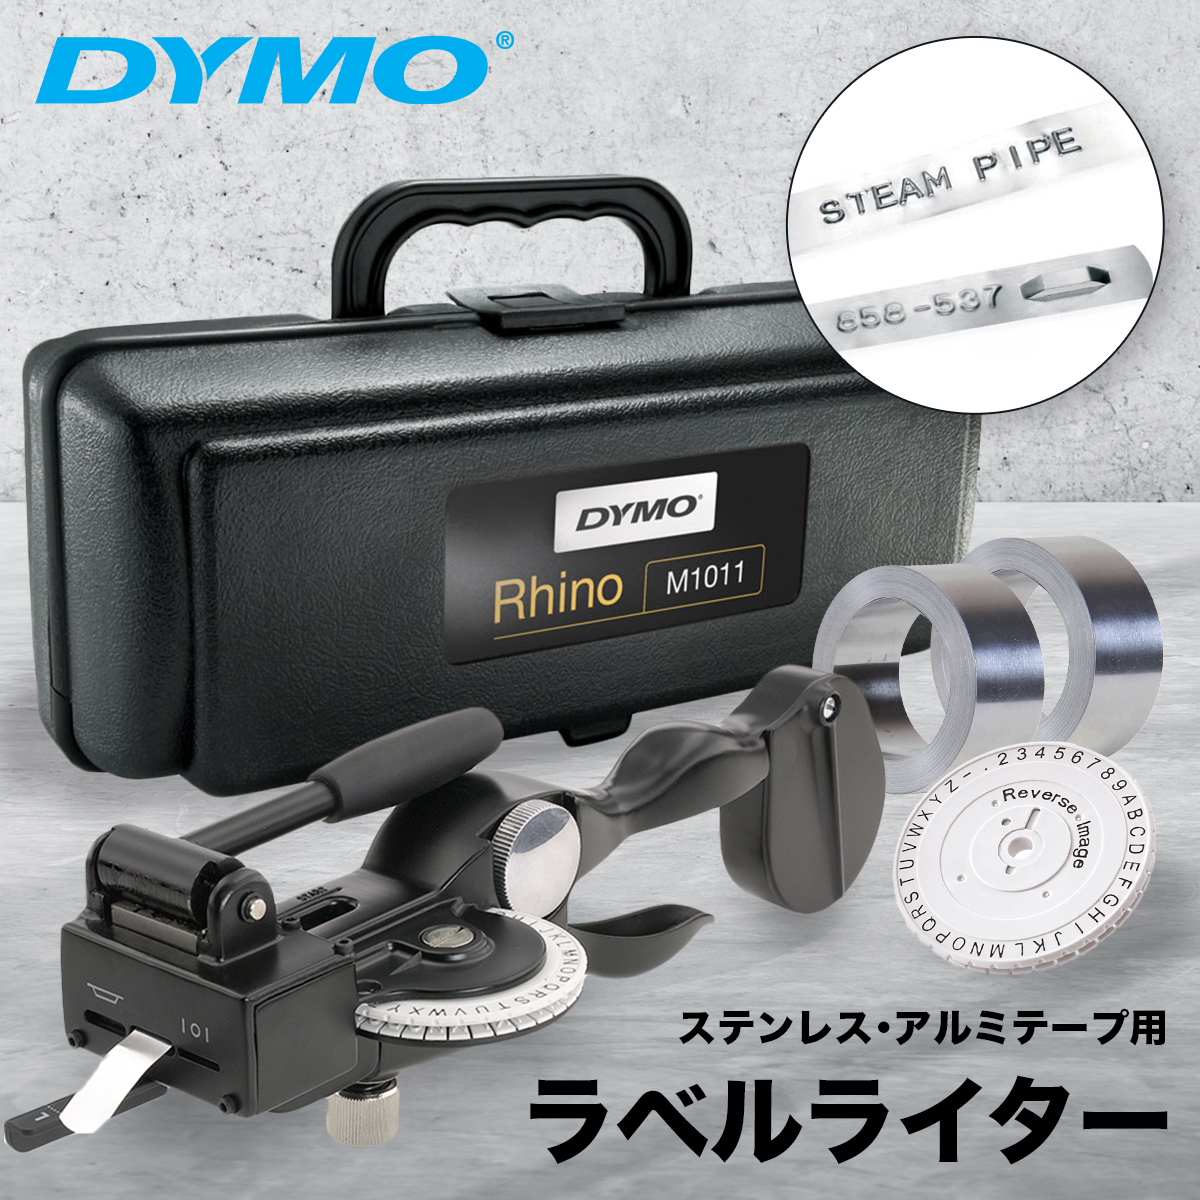 ダイモ テープライター DYMO M1011 rx4gZaYDhL - godawaripowerispat.com